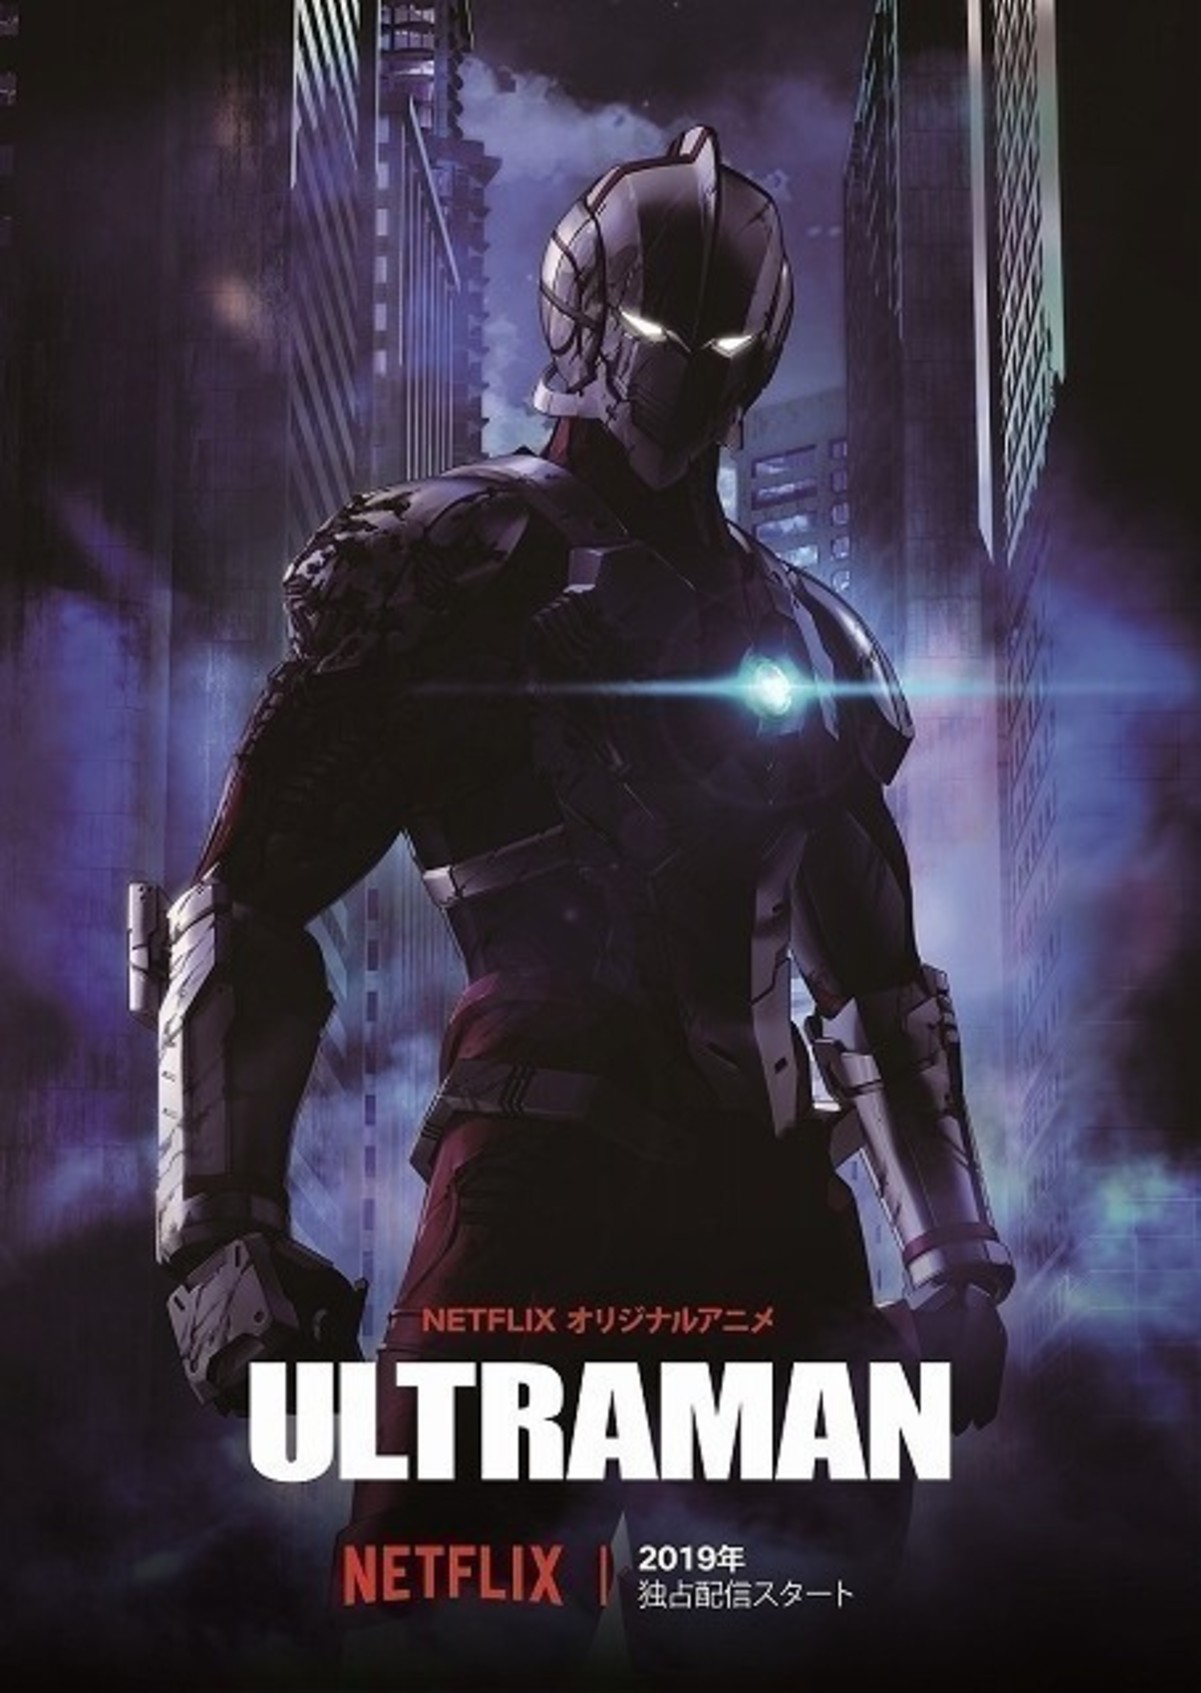 神山健治 荒牧伸志のアニメ Ultraman 19年春にnetflixで全世界独占配信 映画ニュース 映画 Com